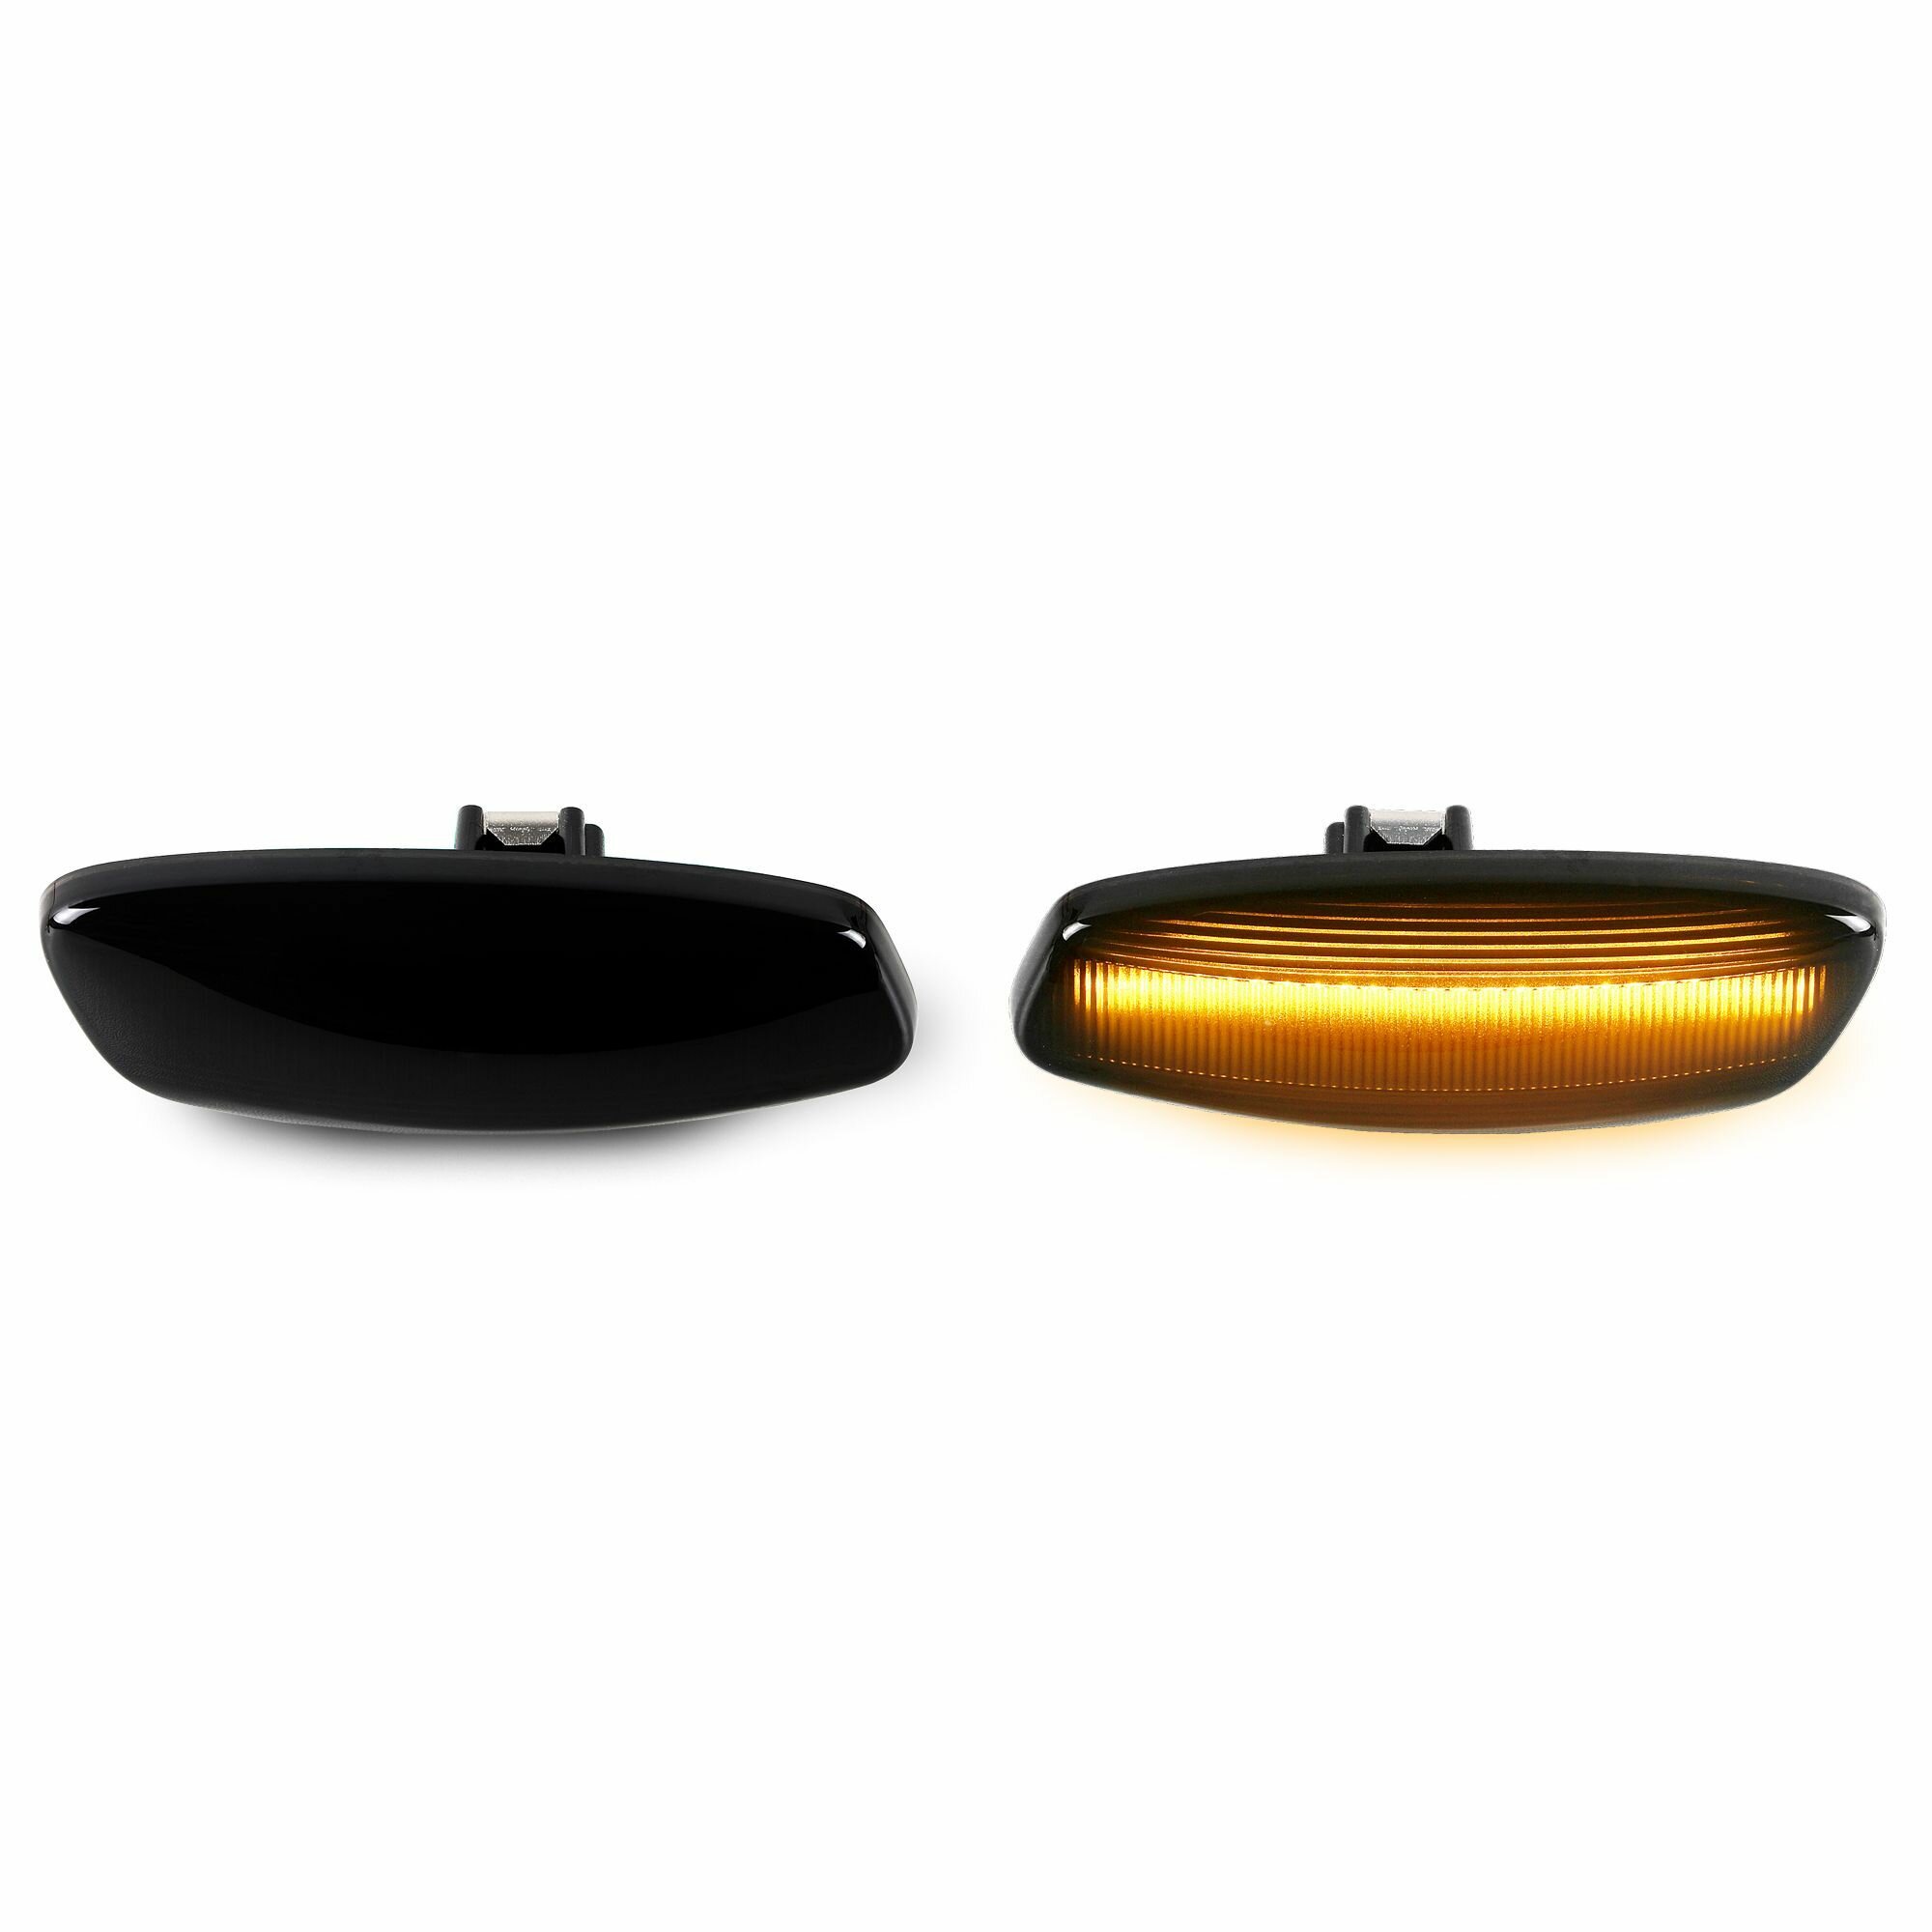 Повторители поворотников LED динамические-тонированные для Peugeot/Citroen (2 шт) OR-7608D-1